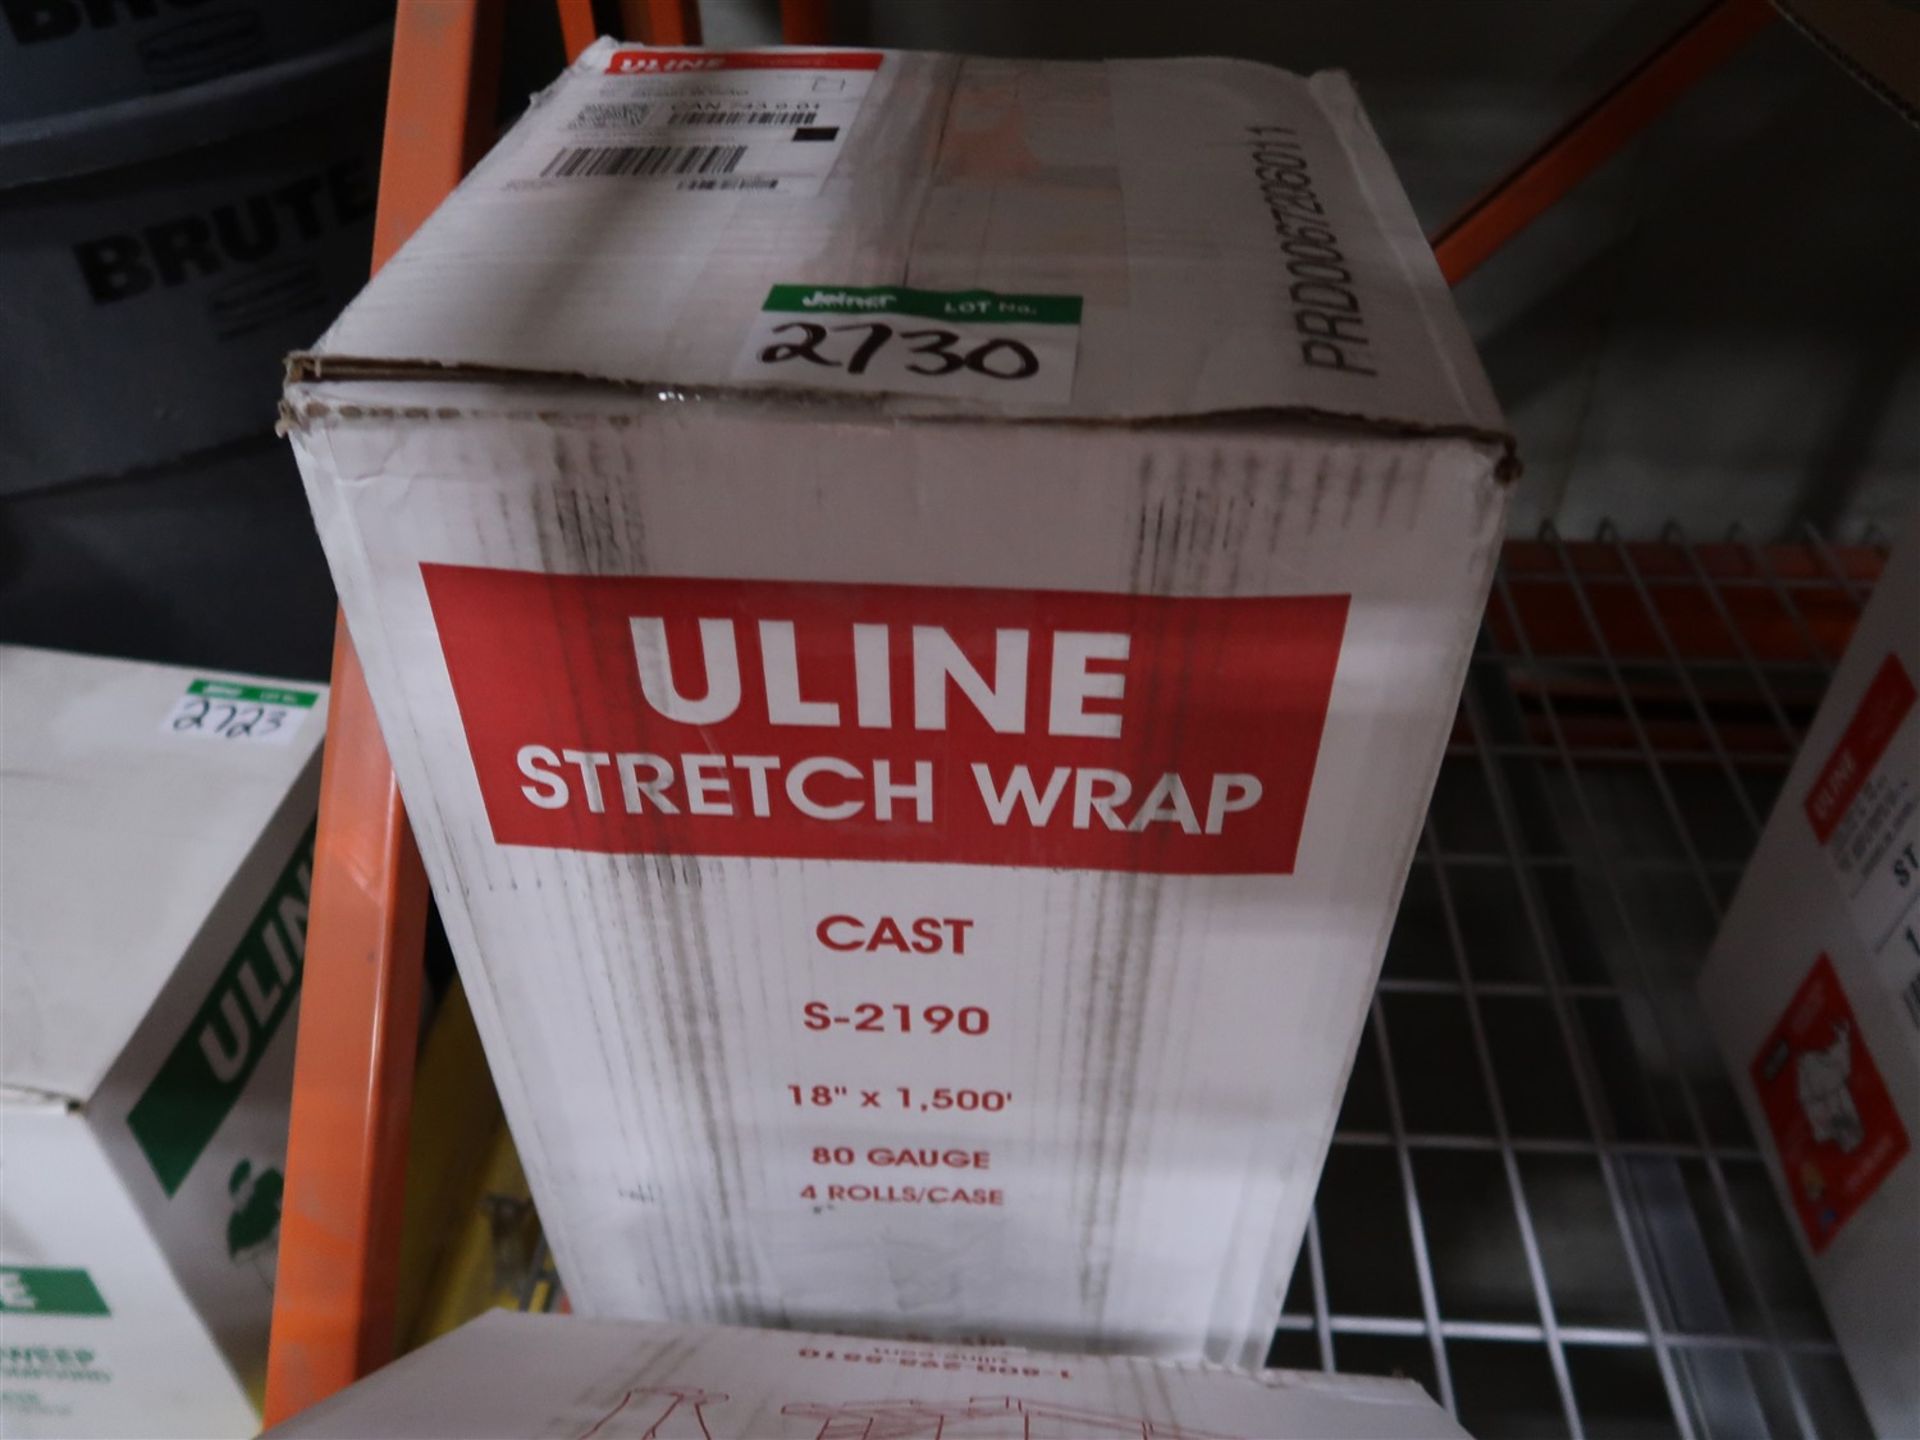 BOX OF ULINE STRETCH WRAP S-2190